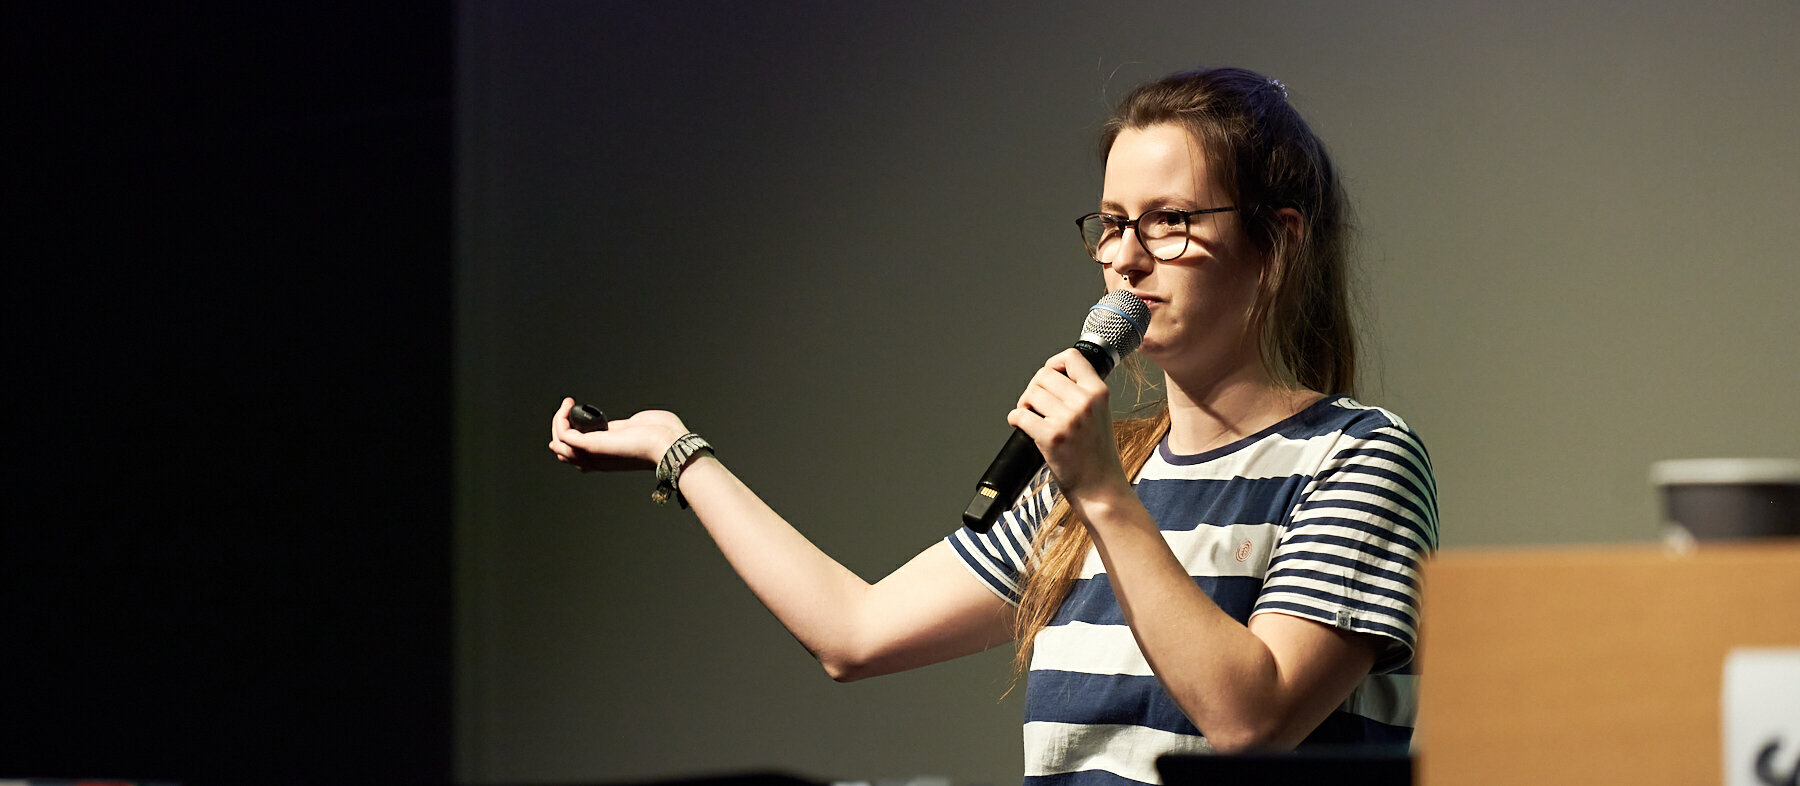 Anna Hülkenberg auf der Bühne bei einem Slam. Sie trägt einem gestreiftes T-Shirt und hält ein Mikrofon in der Hand.